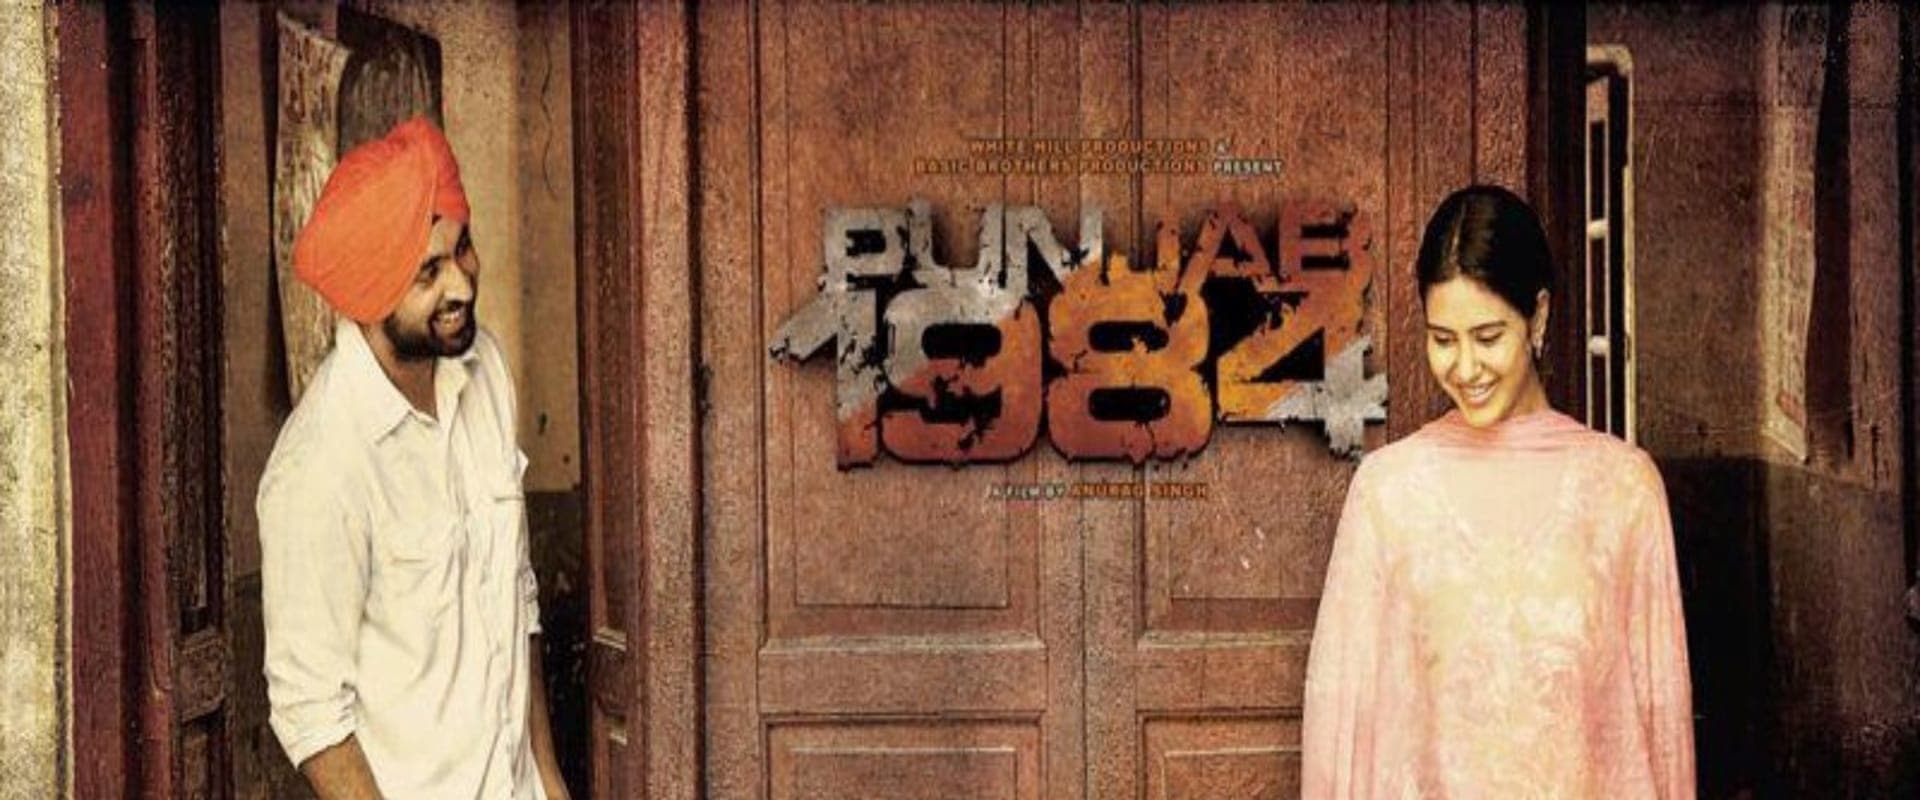 Punjab 1984